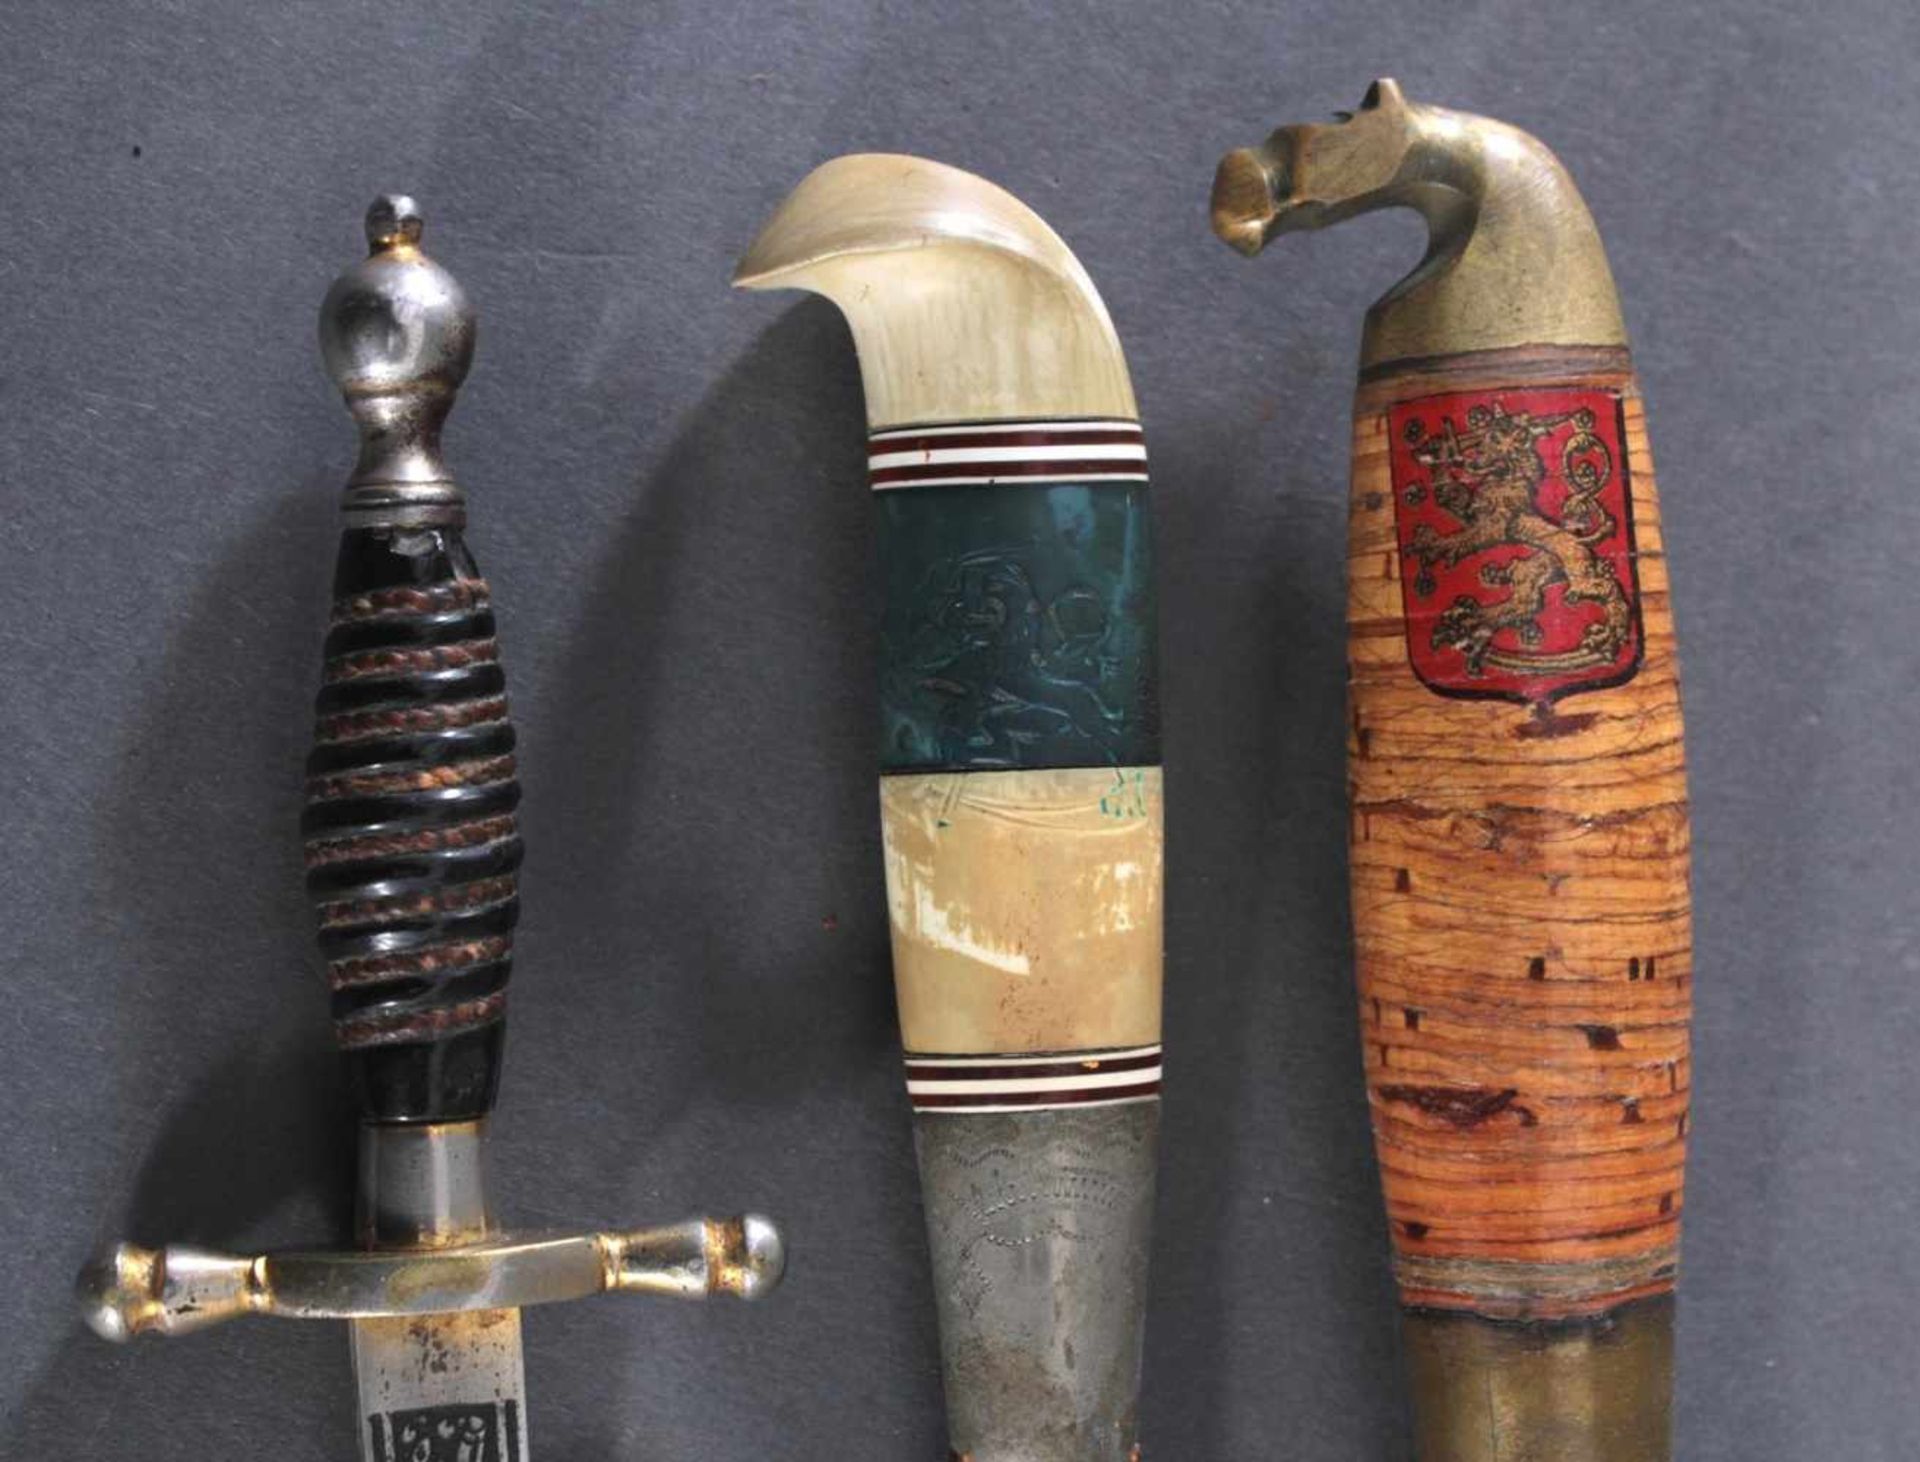 3 Messer2 Messer mit verzierter Klinge, Lederscheide mit Metallaplikationen, Griffe aus Bakelit, - Image 4 of 8